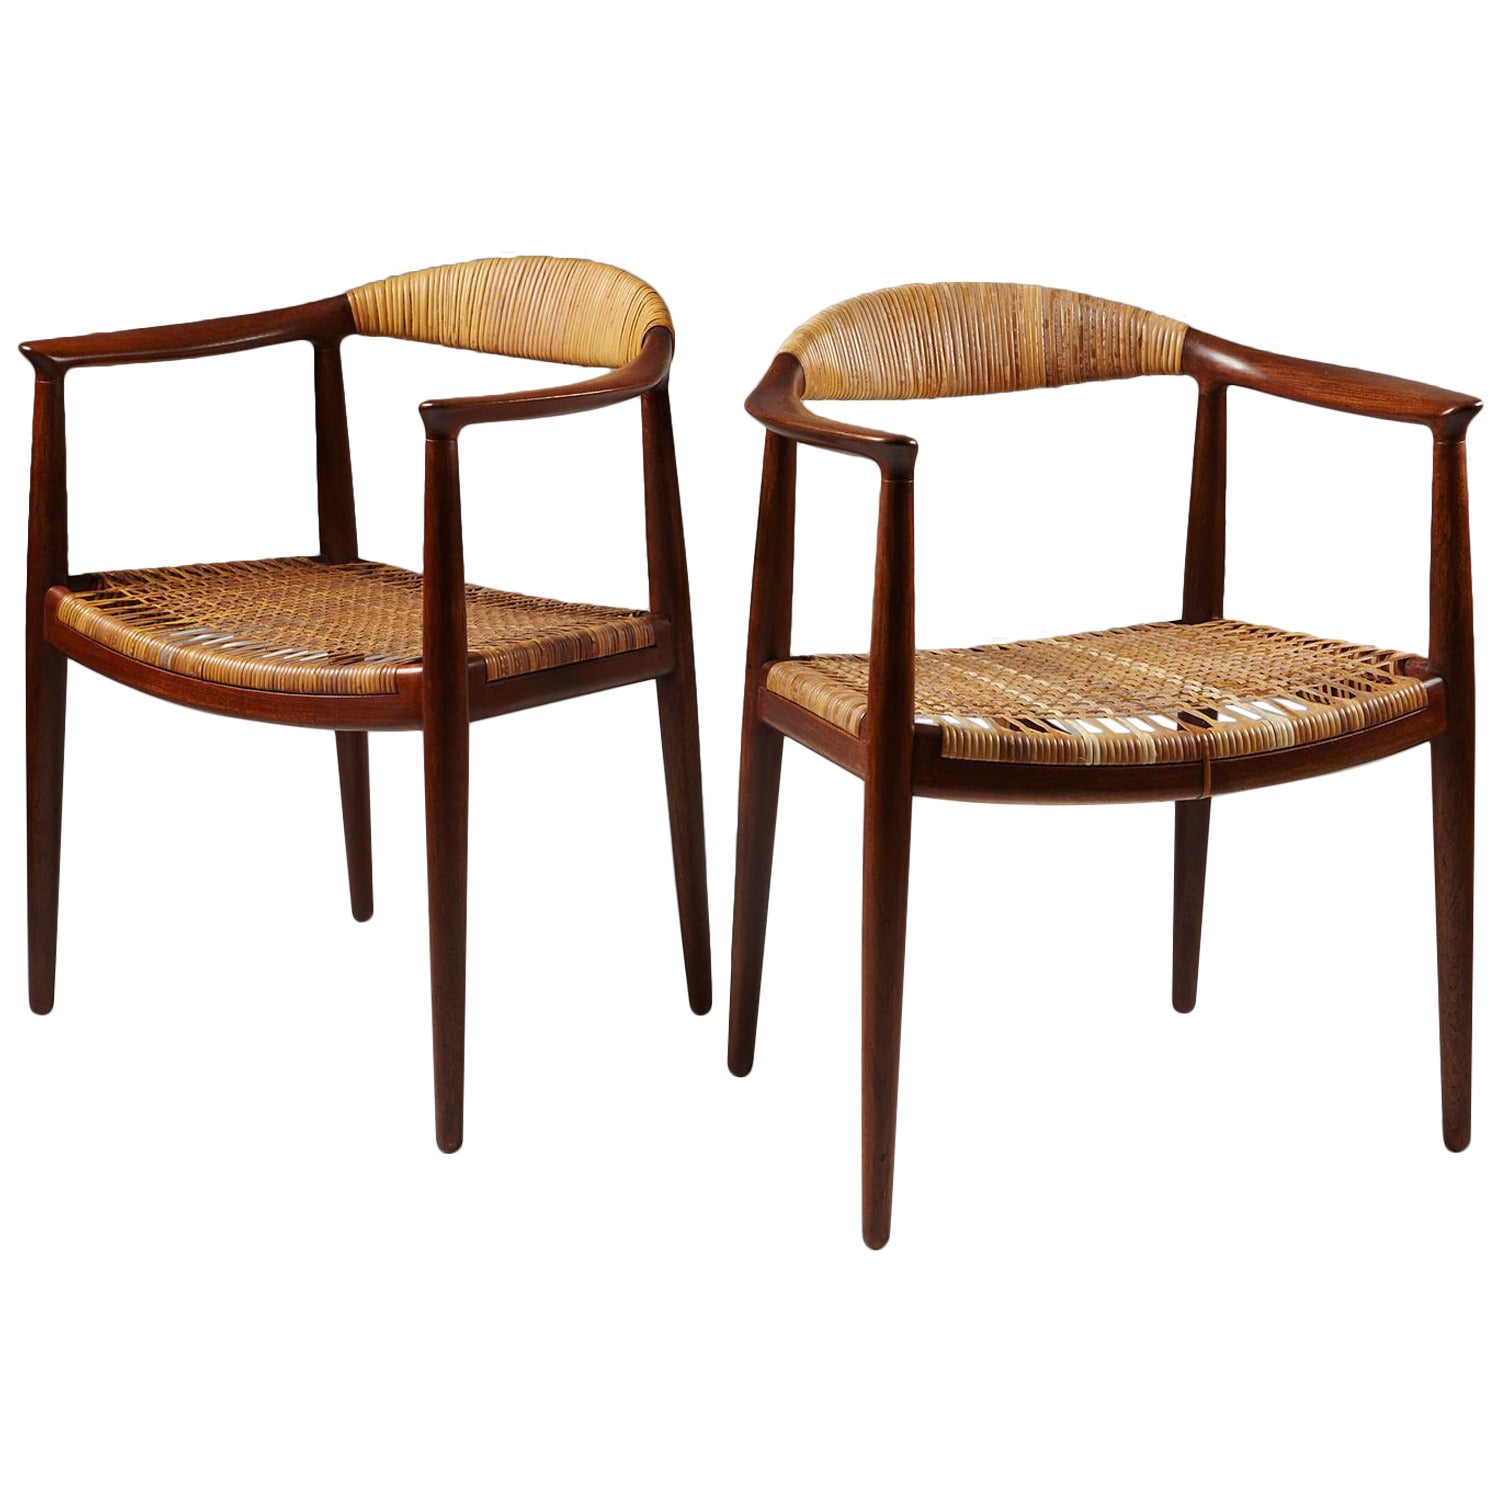 Armchair “The Chair” Designed by Hans Wegner for Johannes Hansen, Denmark